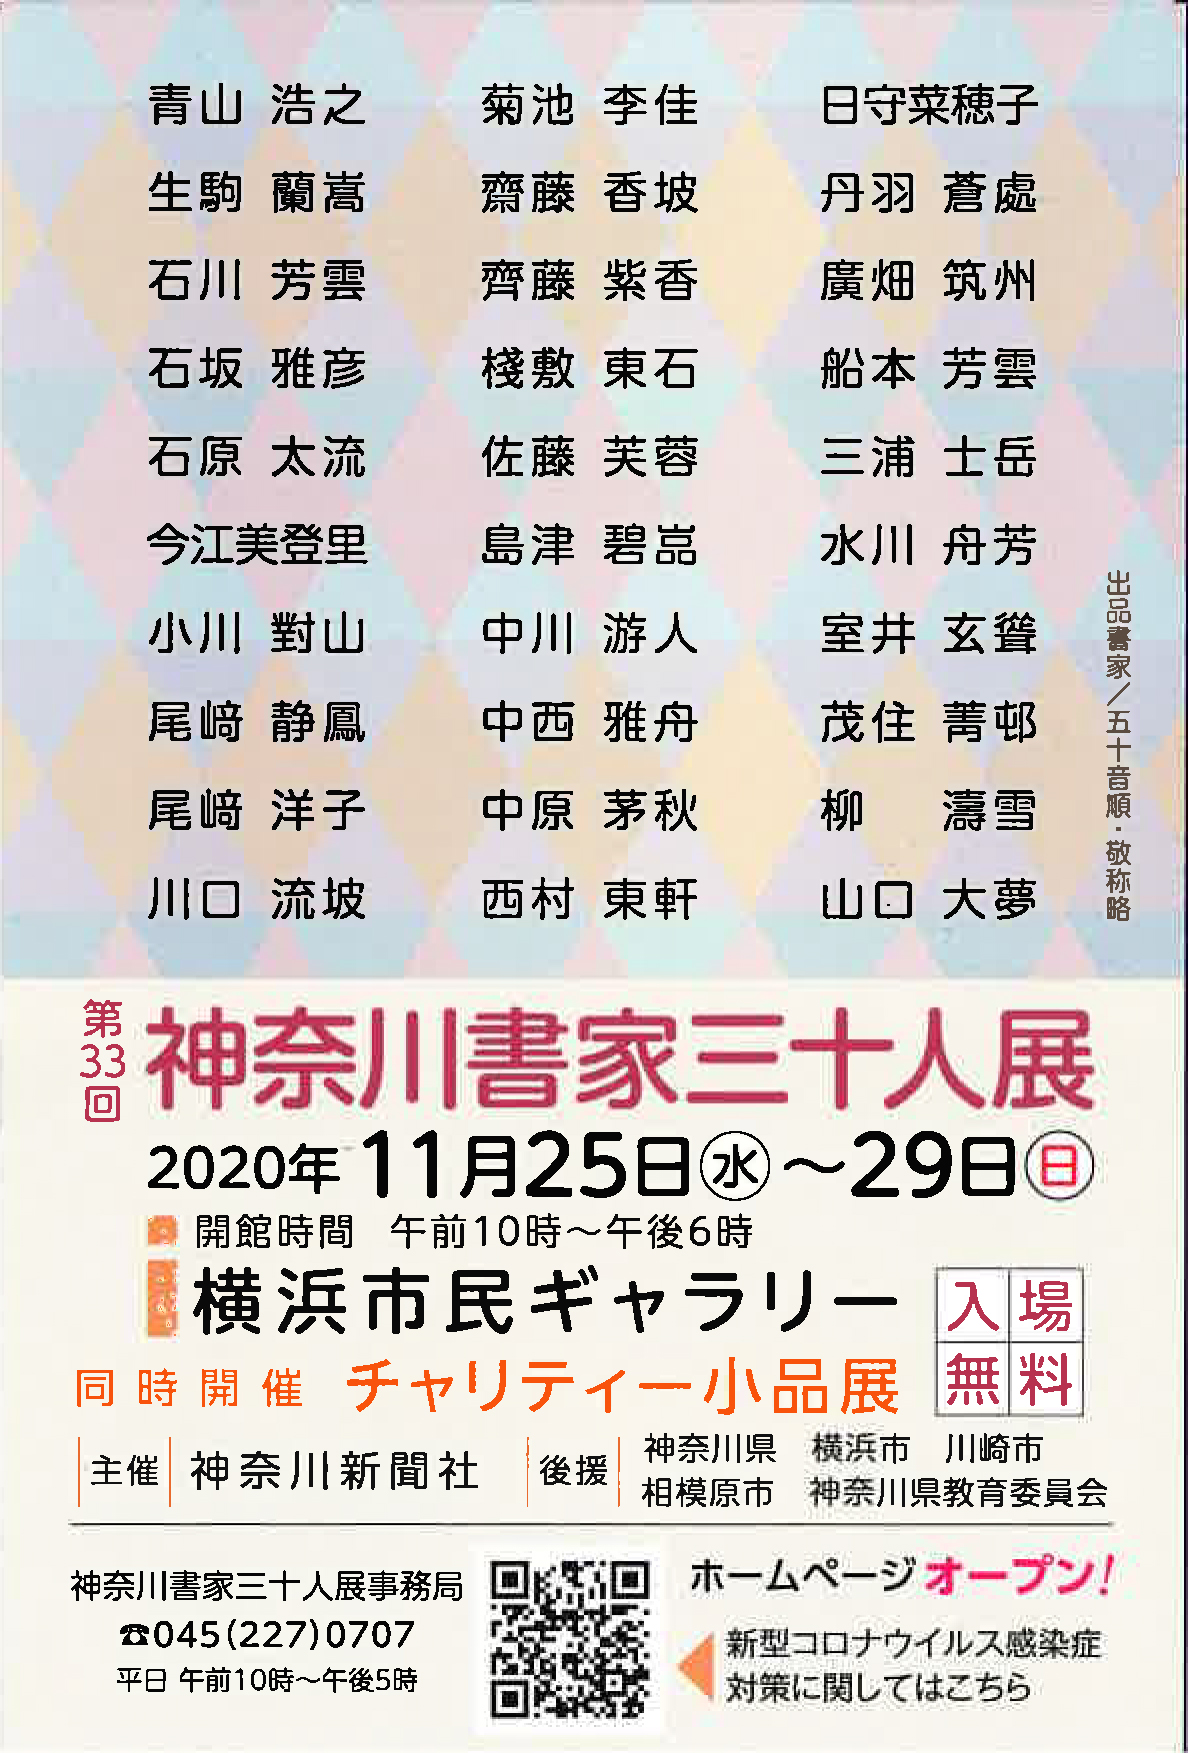 【展覧会情報】第33回 神奈川書家三十人展